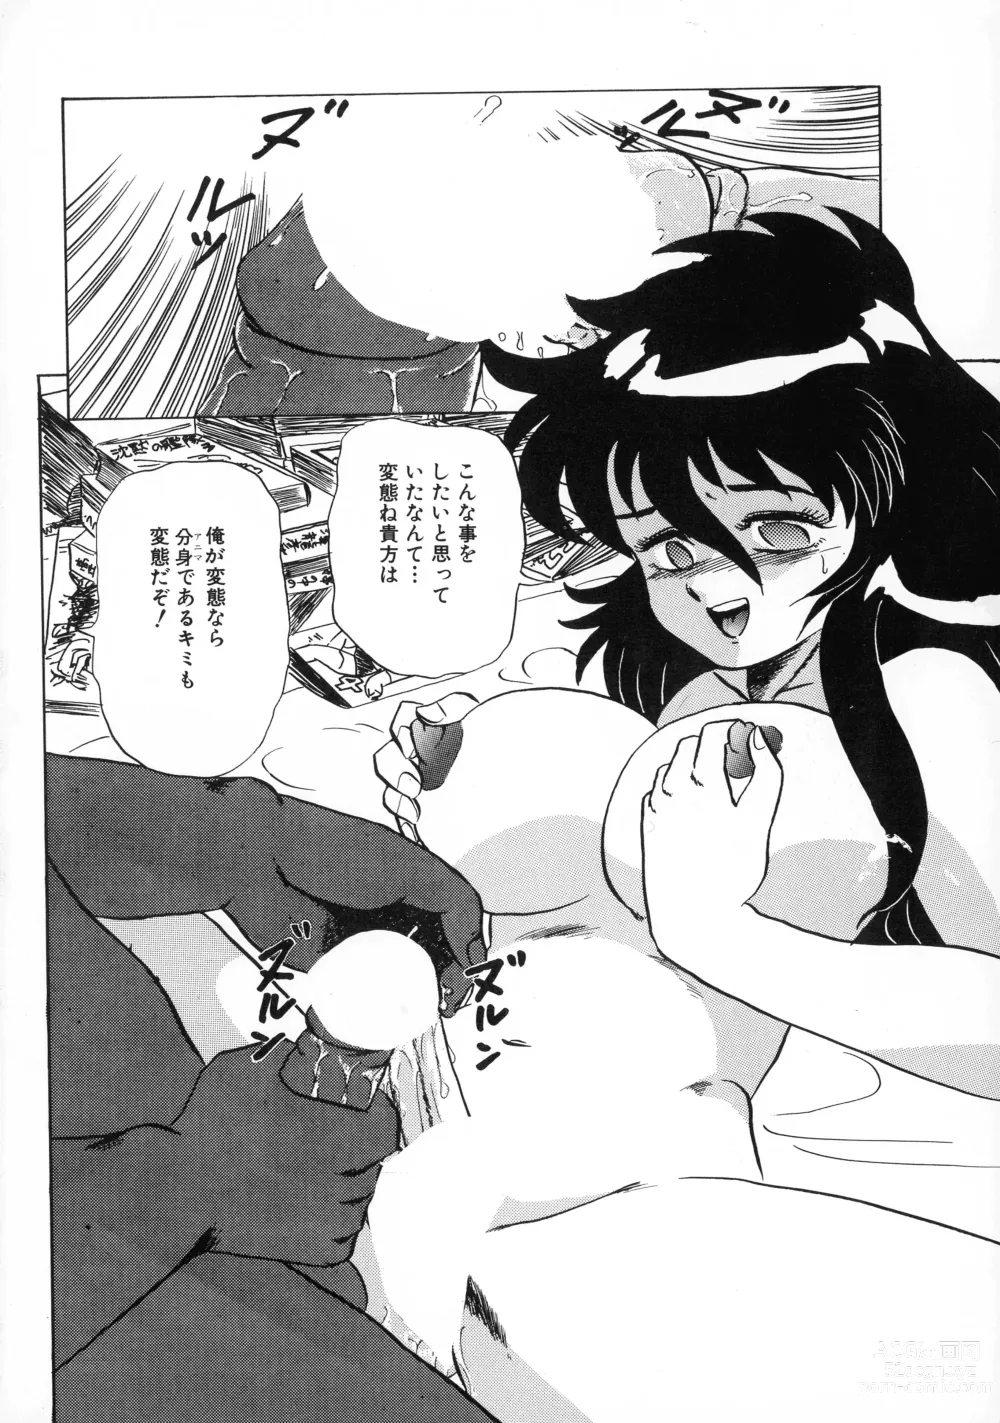 Page 155 of manga Akai Miwaku